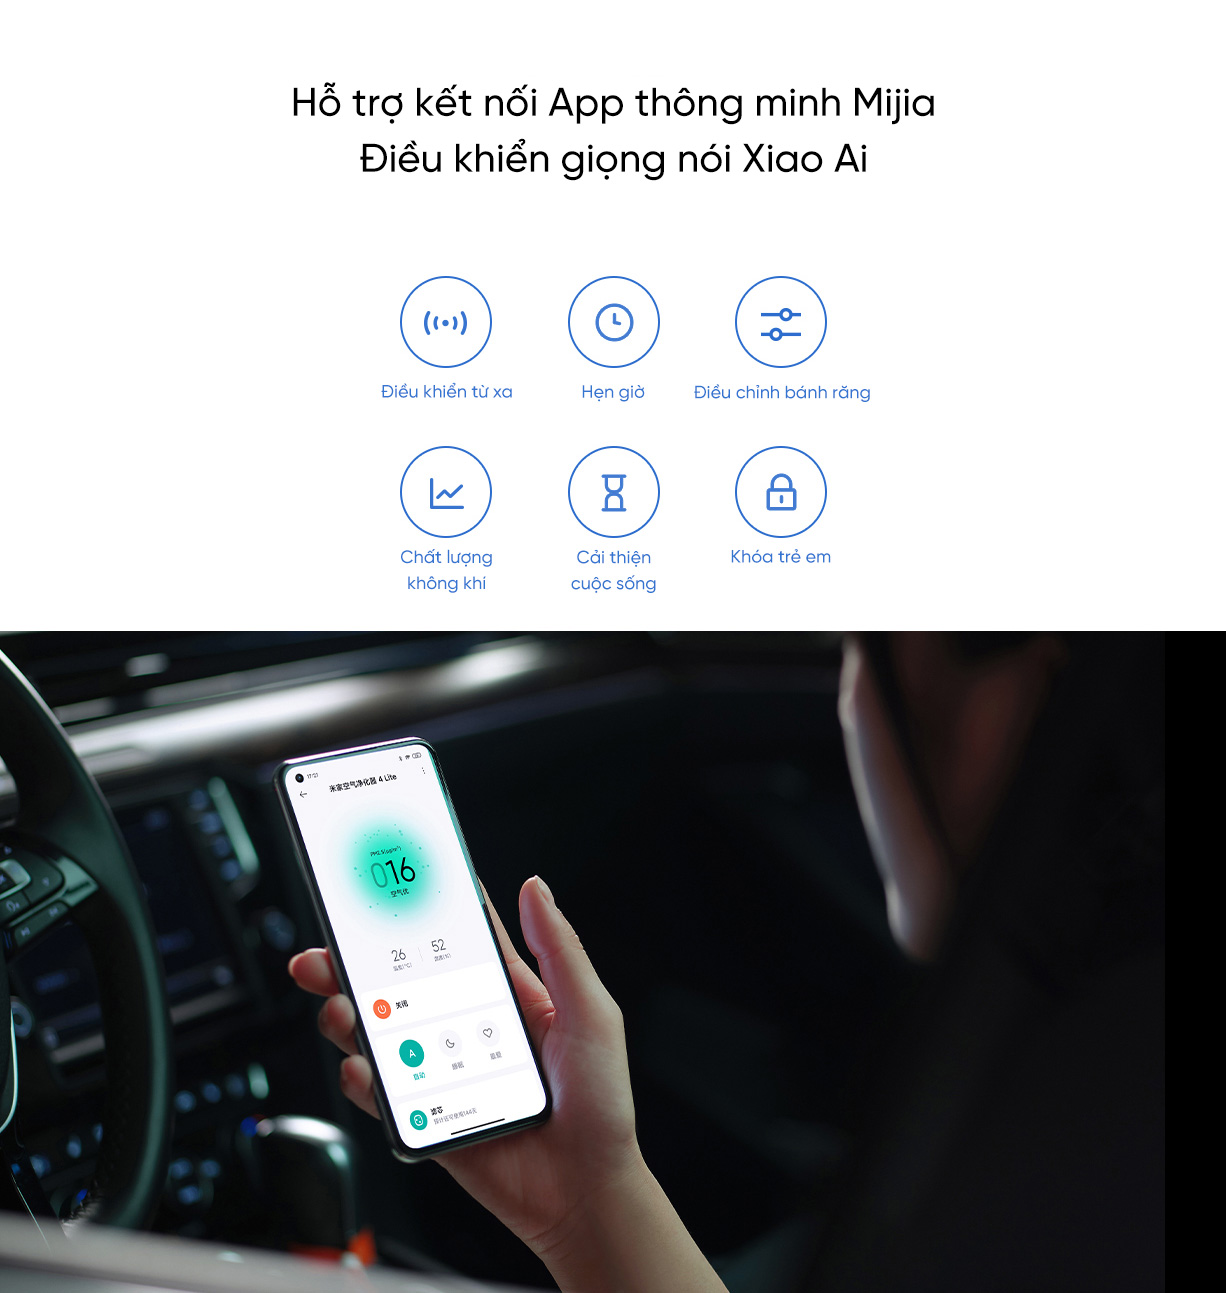 Lọc không khí 4 Lite Hải Phòng hỗ trợ kết nối App thông minh Mijia và điều khiể giọng nói Xiao Ai